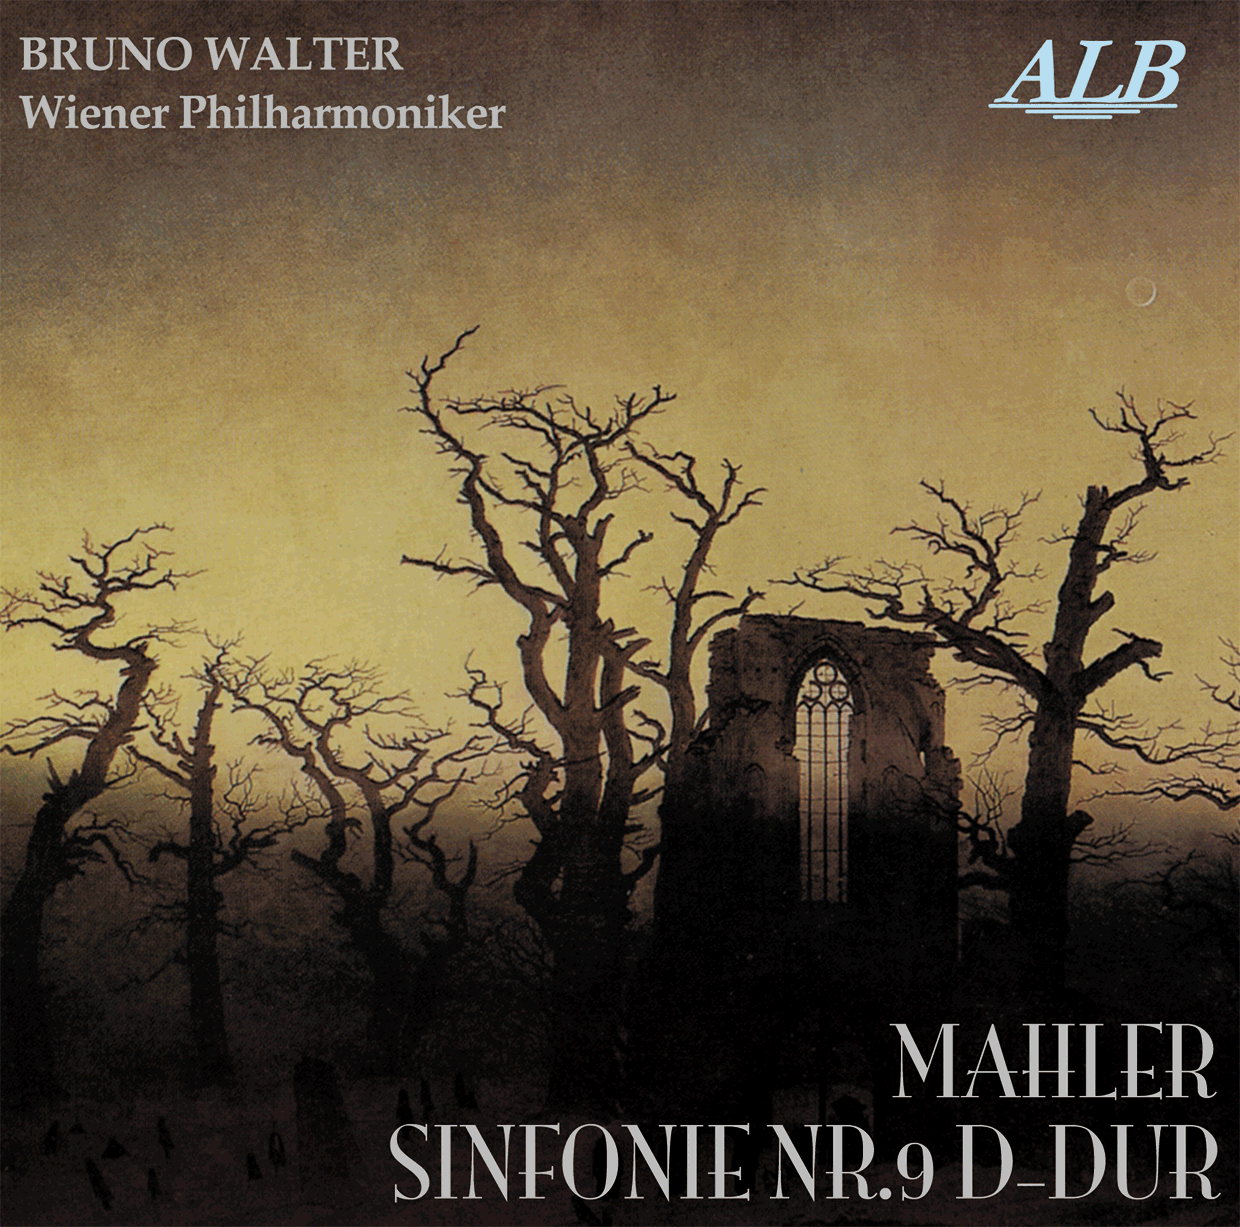 ALB06,ワルター,
ウィーン・フィルハーモニー管弦楽団